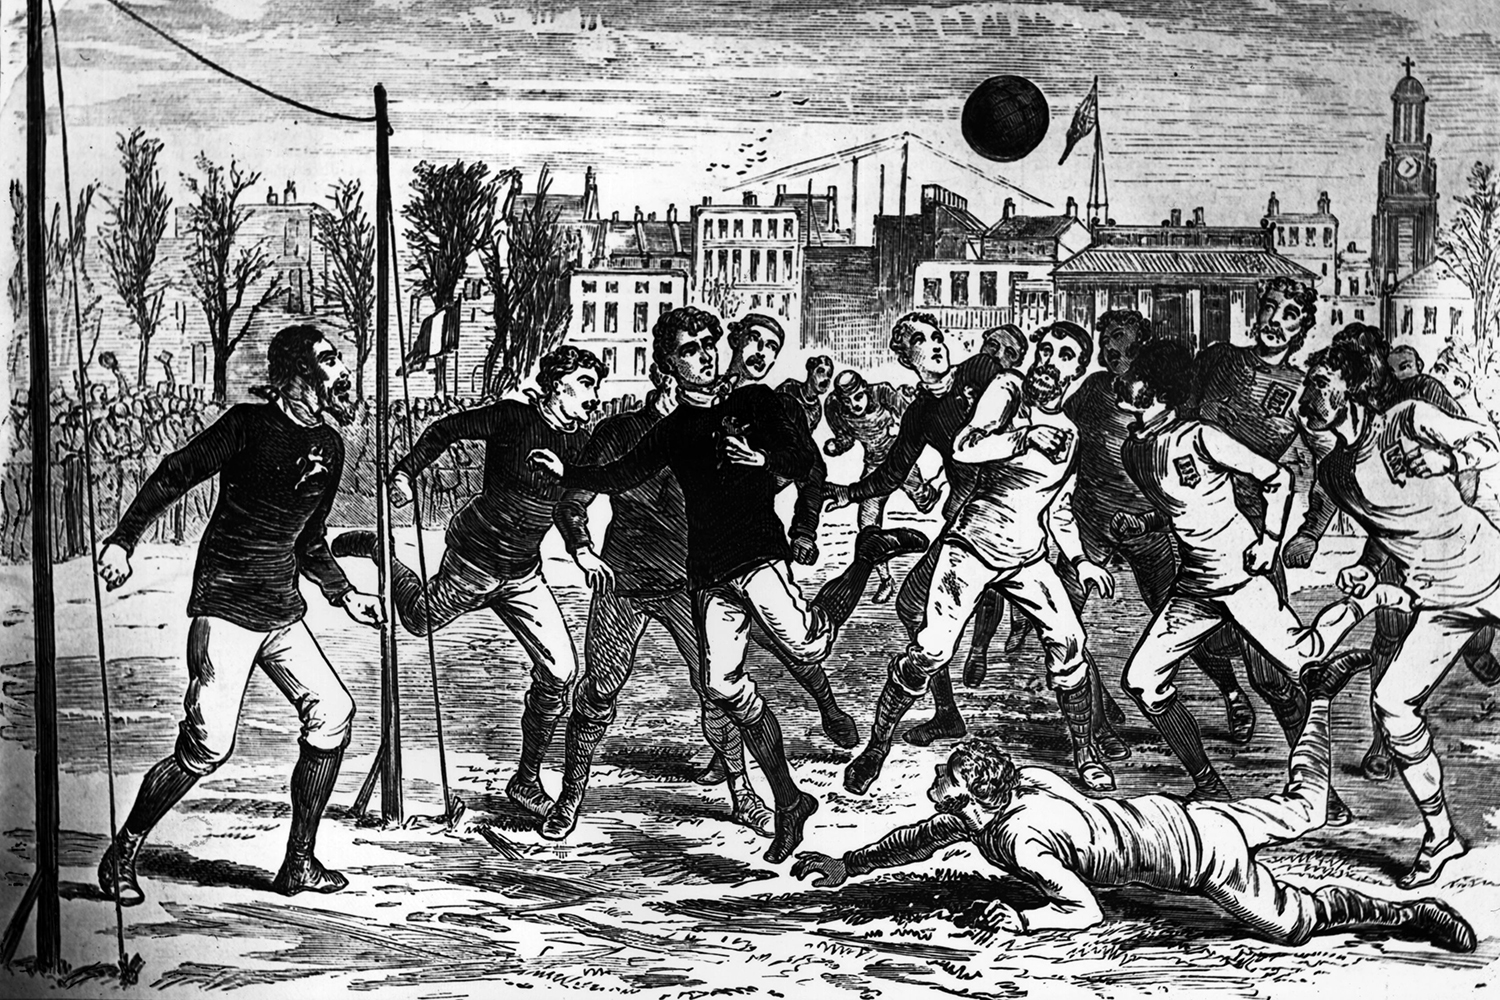 Seleção Escocesa de Futebol – Wikipédia, a enciclopédia livre